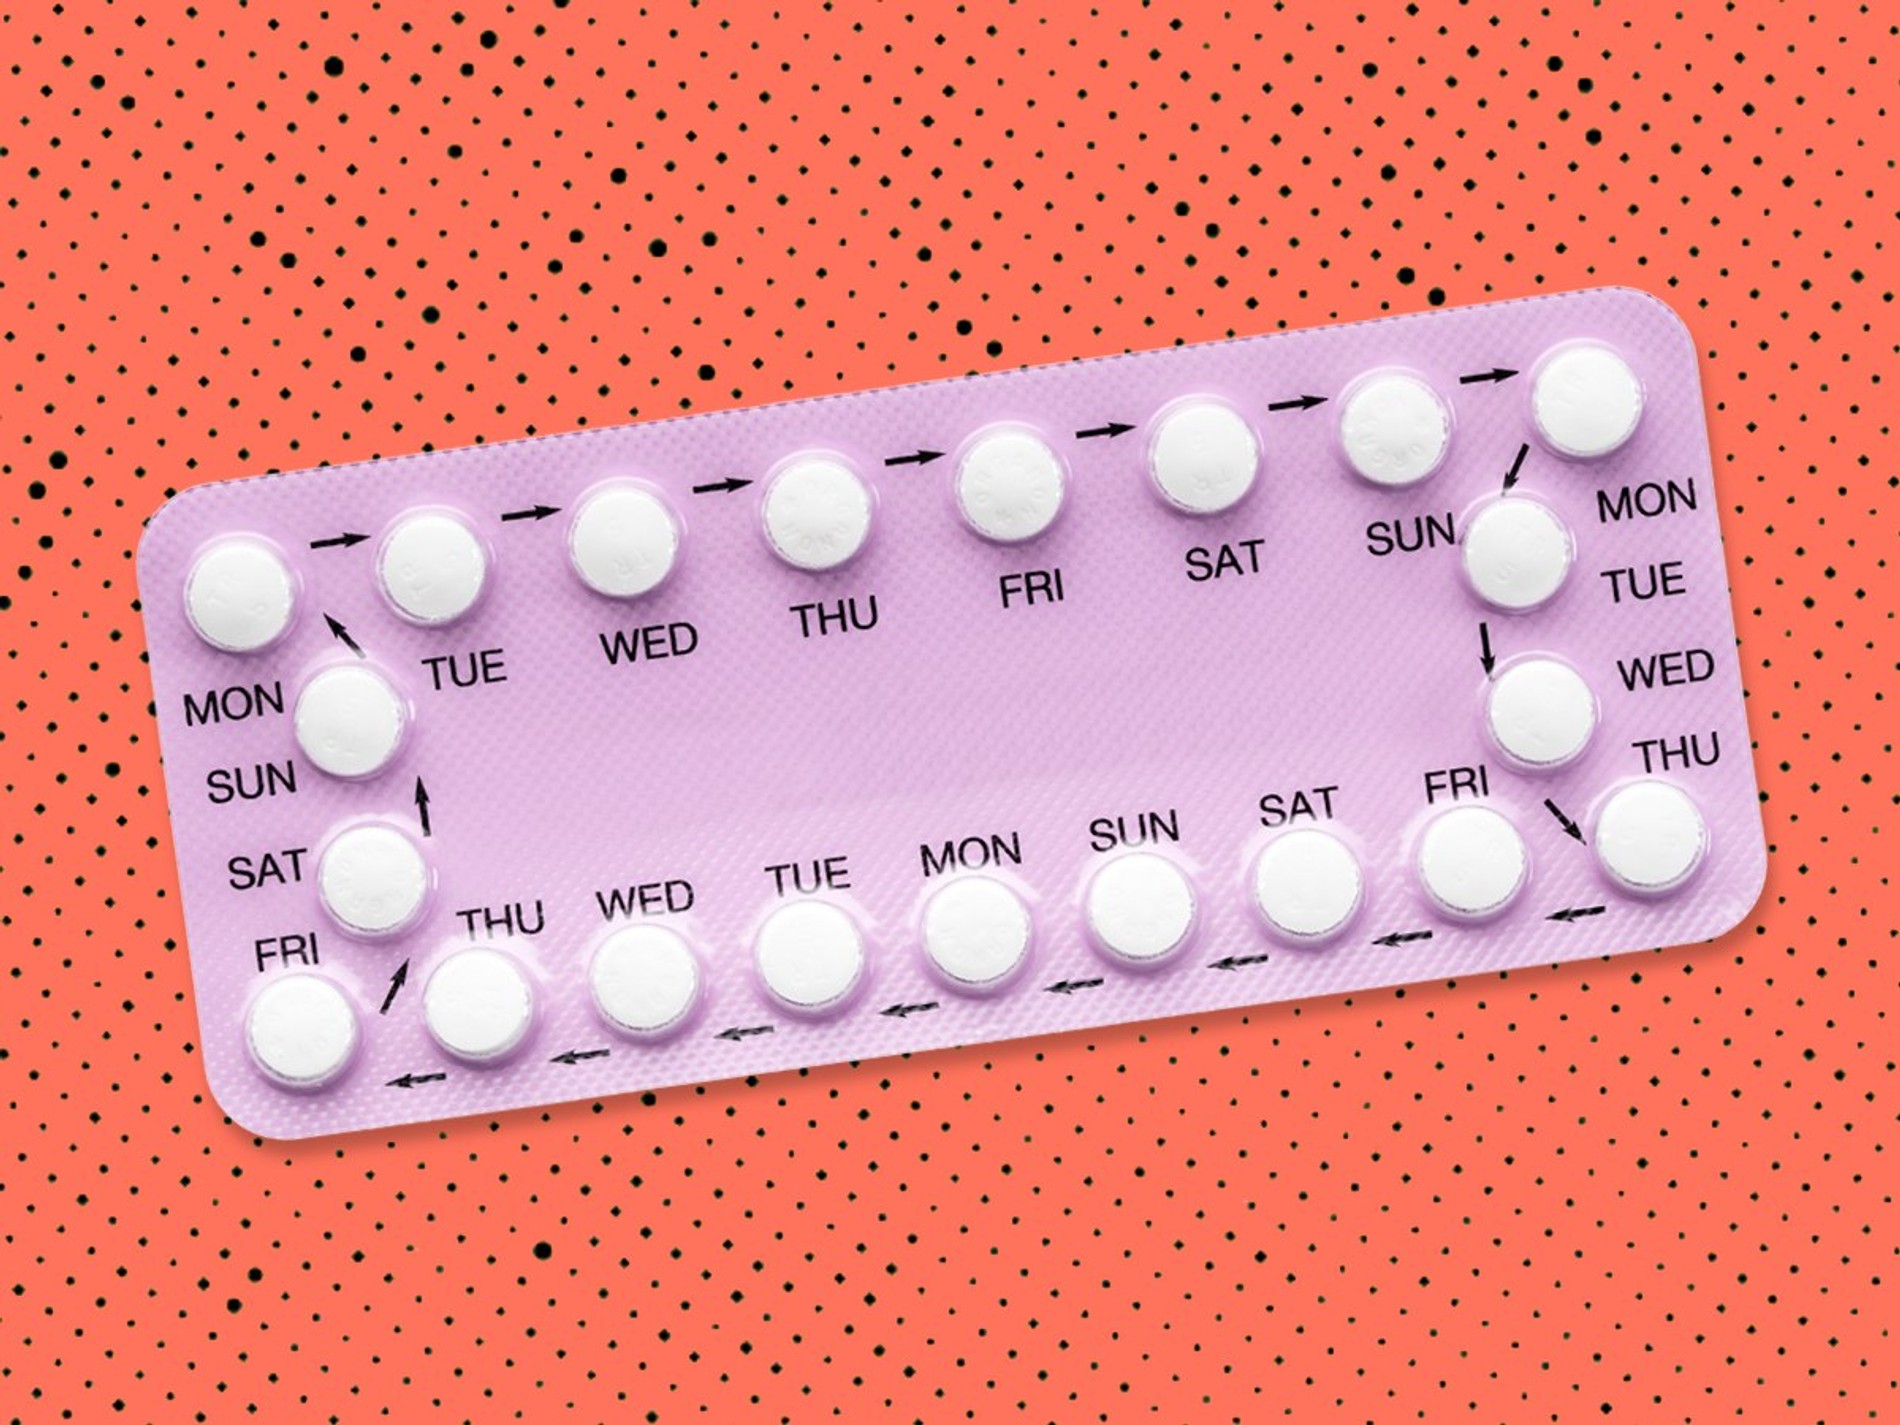 Есть ли таблетка противозачаточная. Противозачаточные. Противозачатныетаблетки. Гормональные противозачаточные таблетки. Гормональные таблетки контрацептивы.